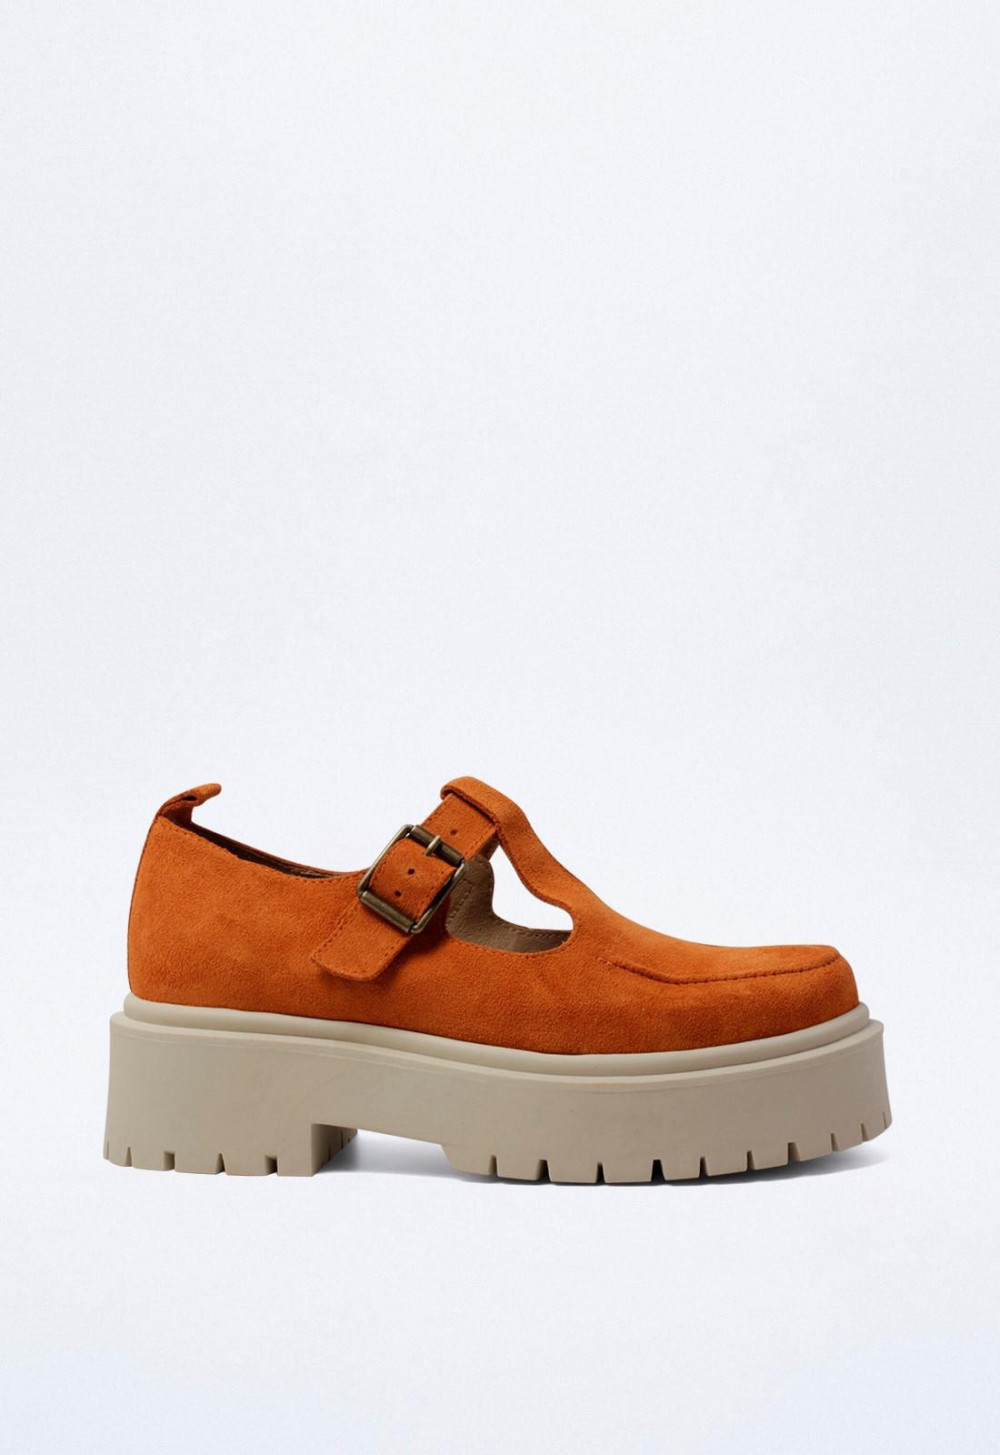 Zapato mujer naranja VAS 05805